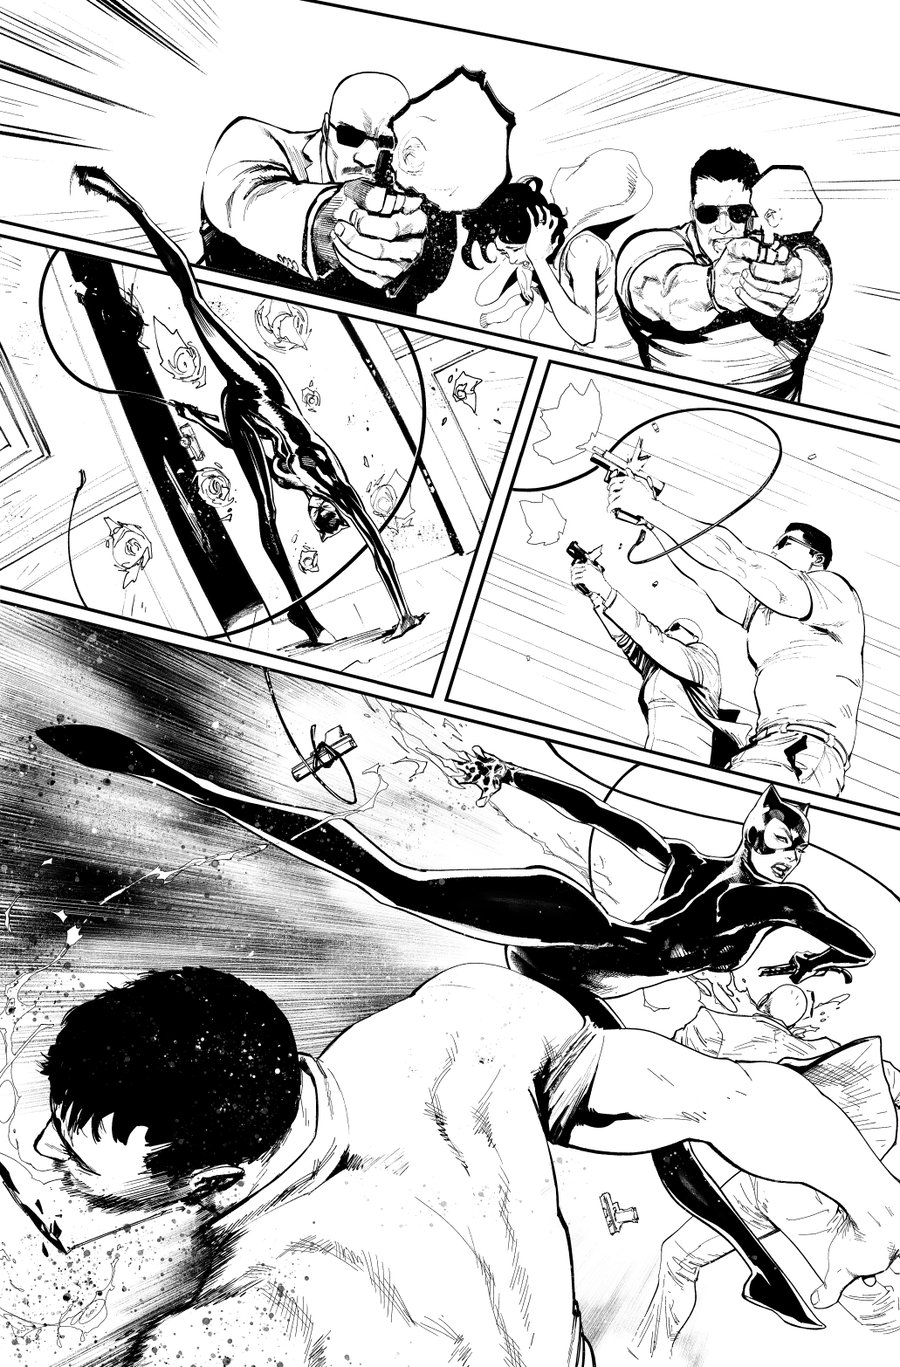 Image of BATMAN KILLING TIME #1 p.17